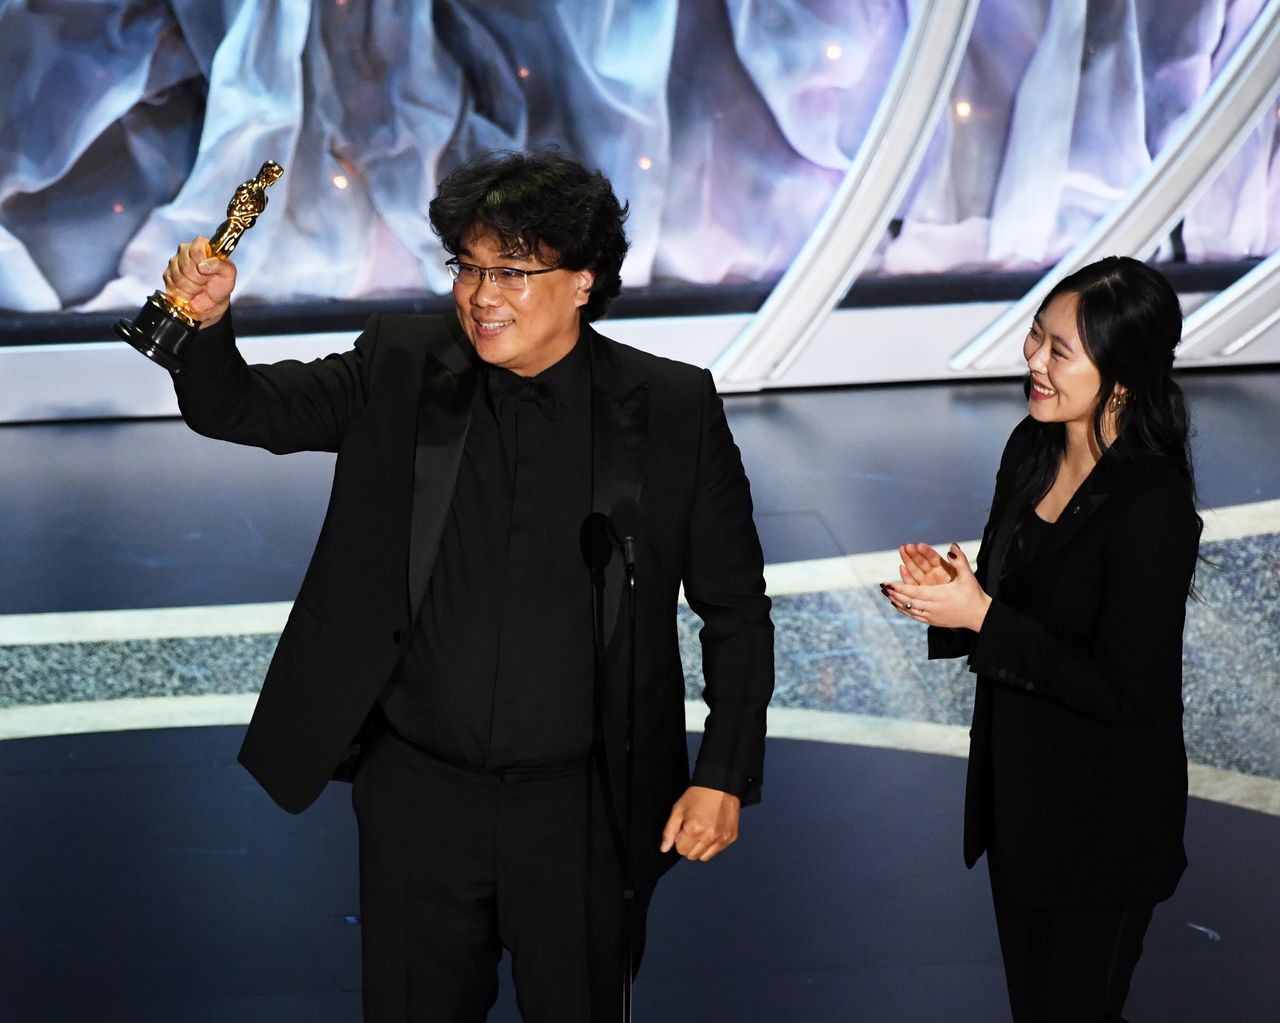 国際長編映画賞を受賞した「パラサイト 半地下の家族」。ポン・ジュノ監督がオスカー像を受け取りました